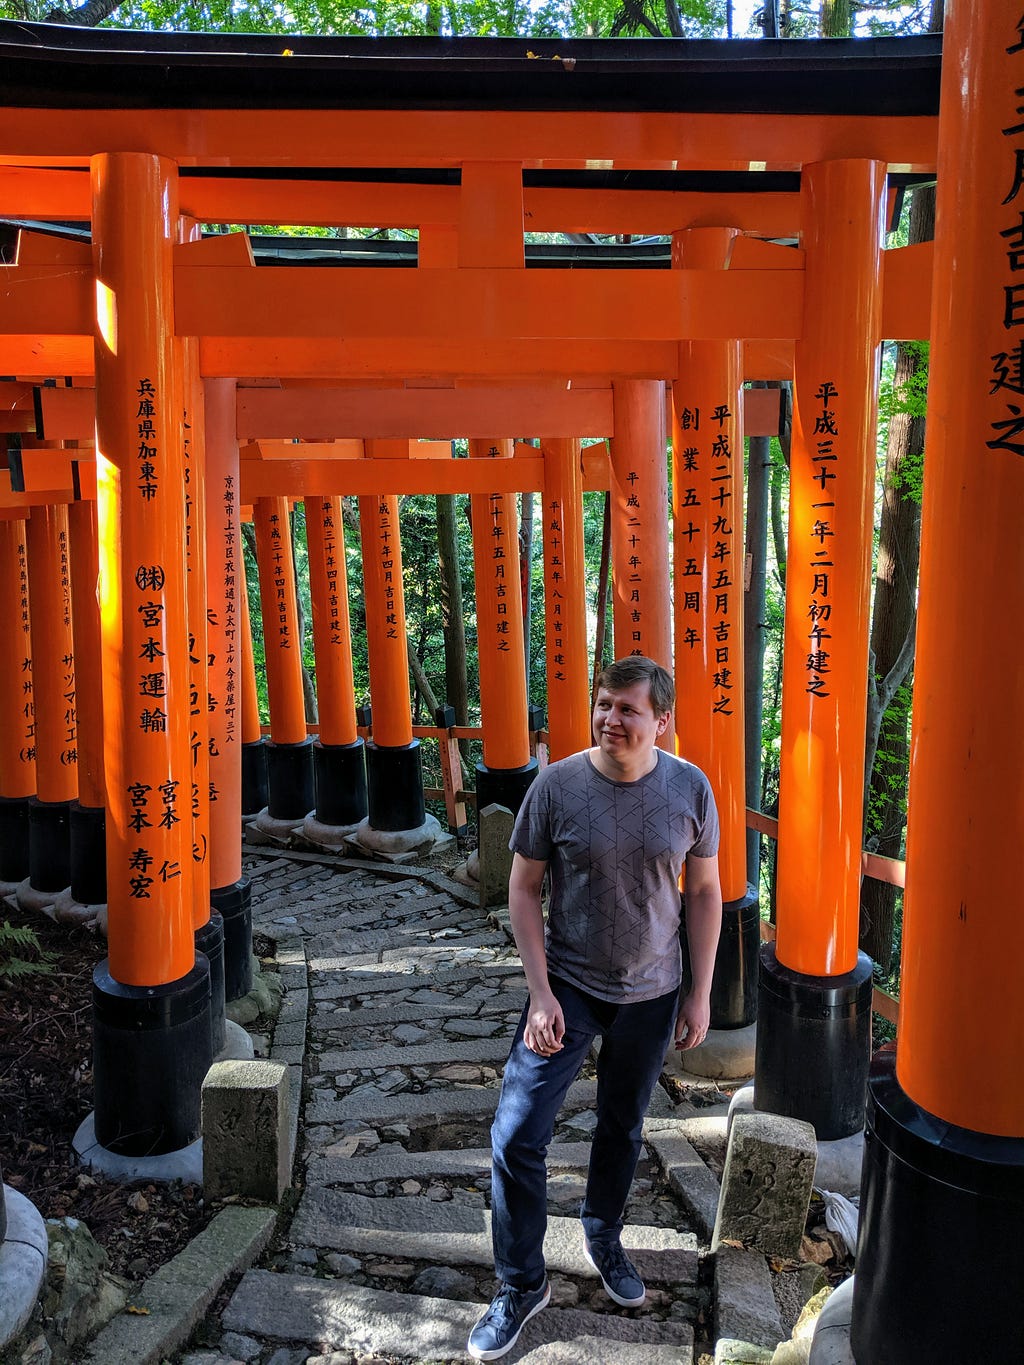 Me in Kyoto, Japan in 2019